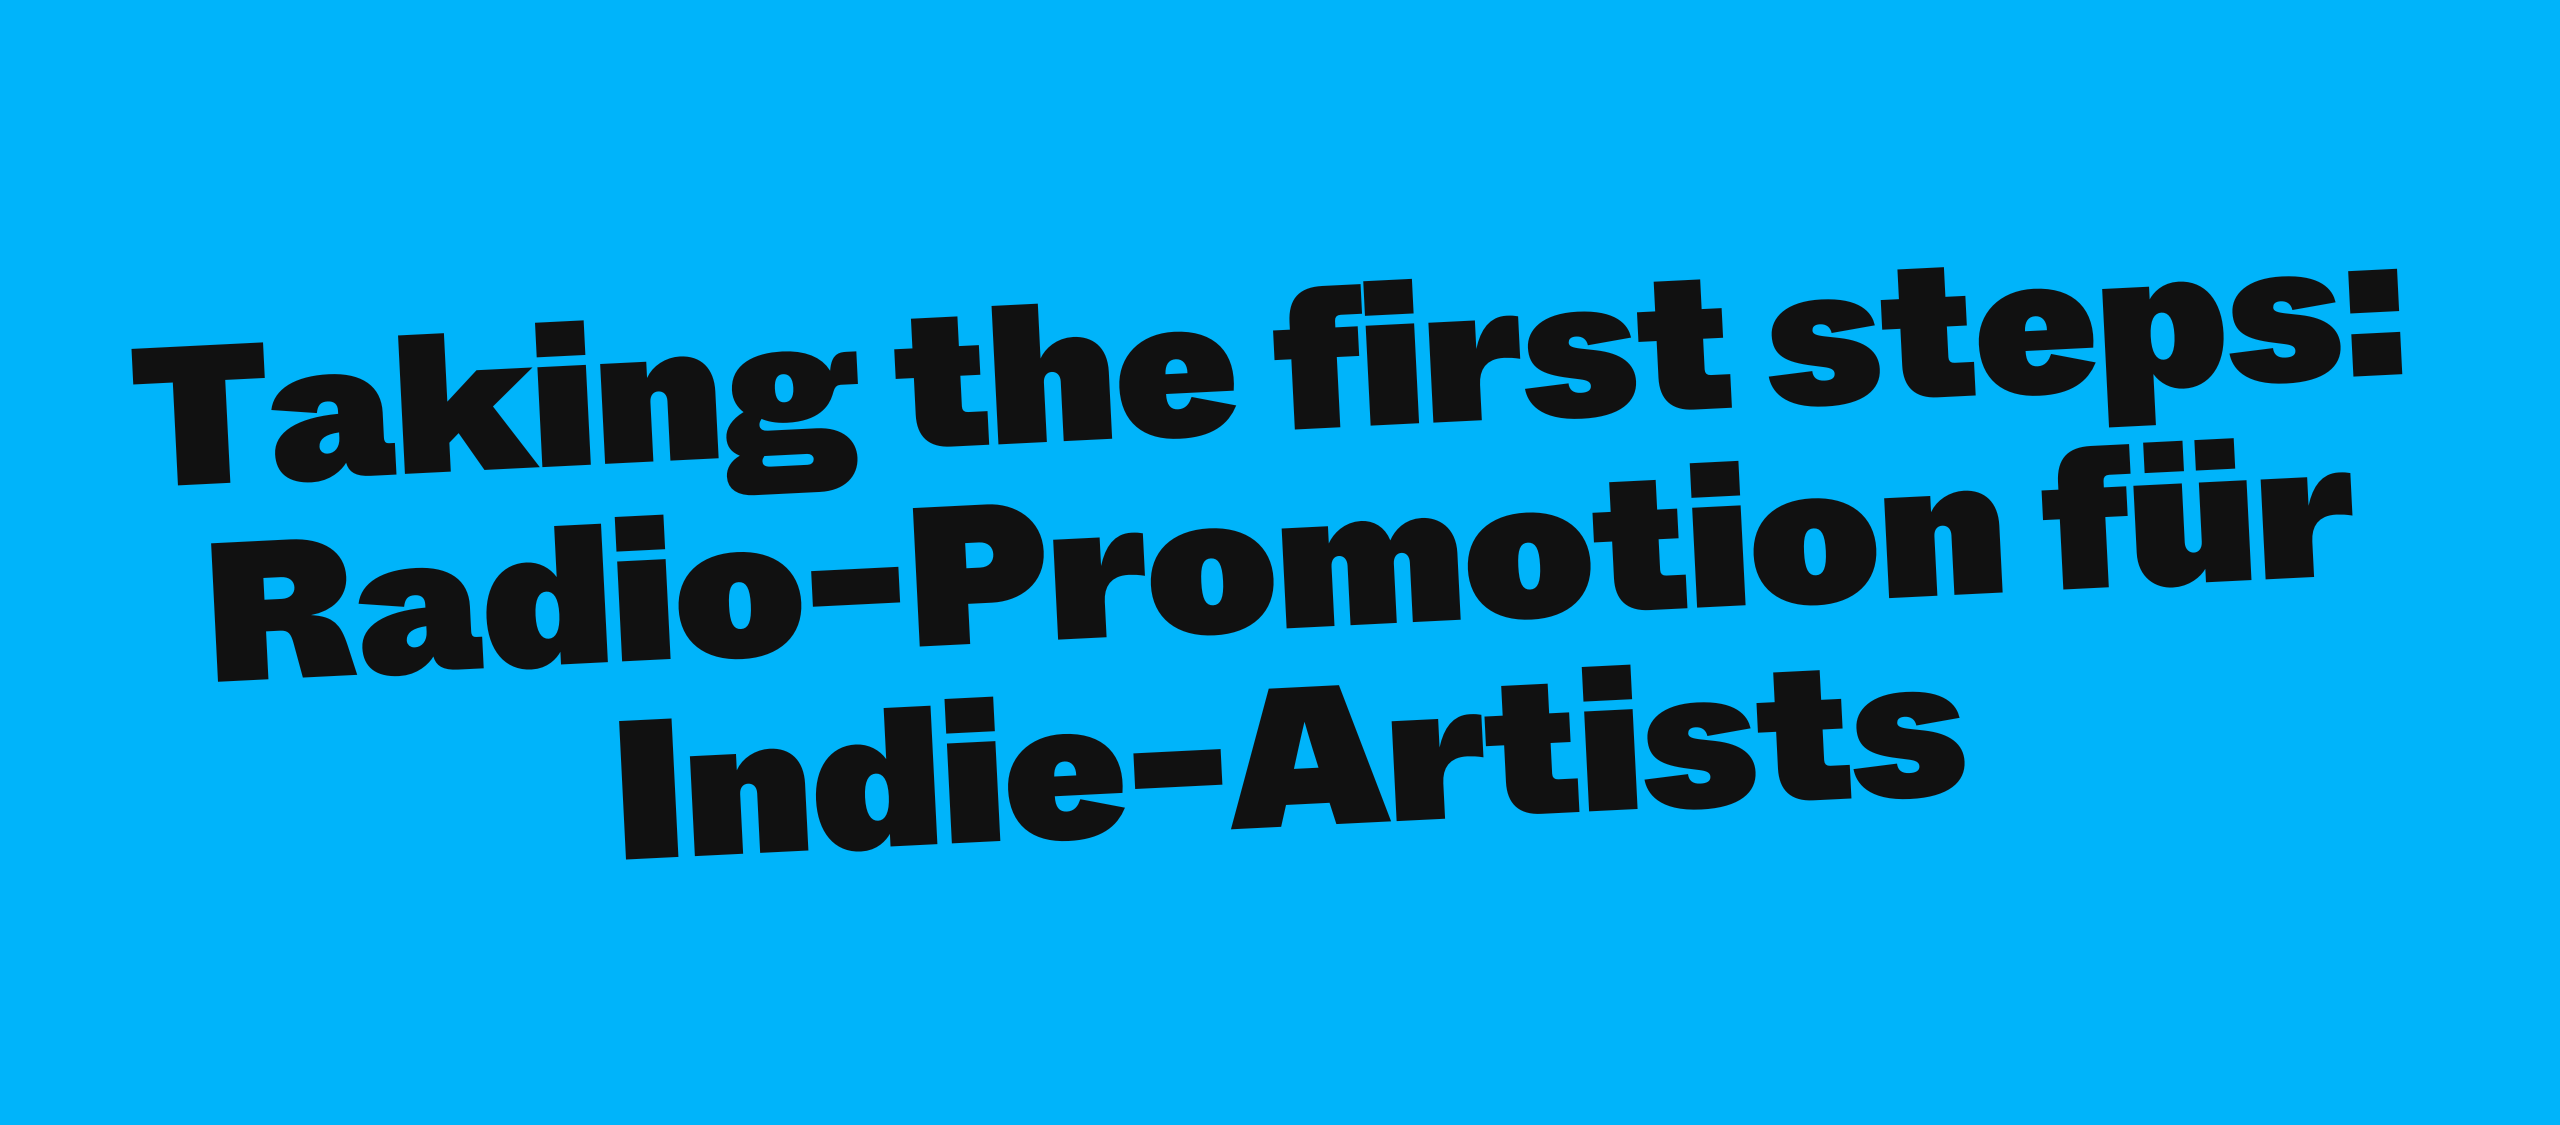 Taking the first steps: Radio-Promotion für Indie-Artists